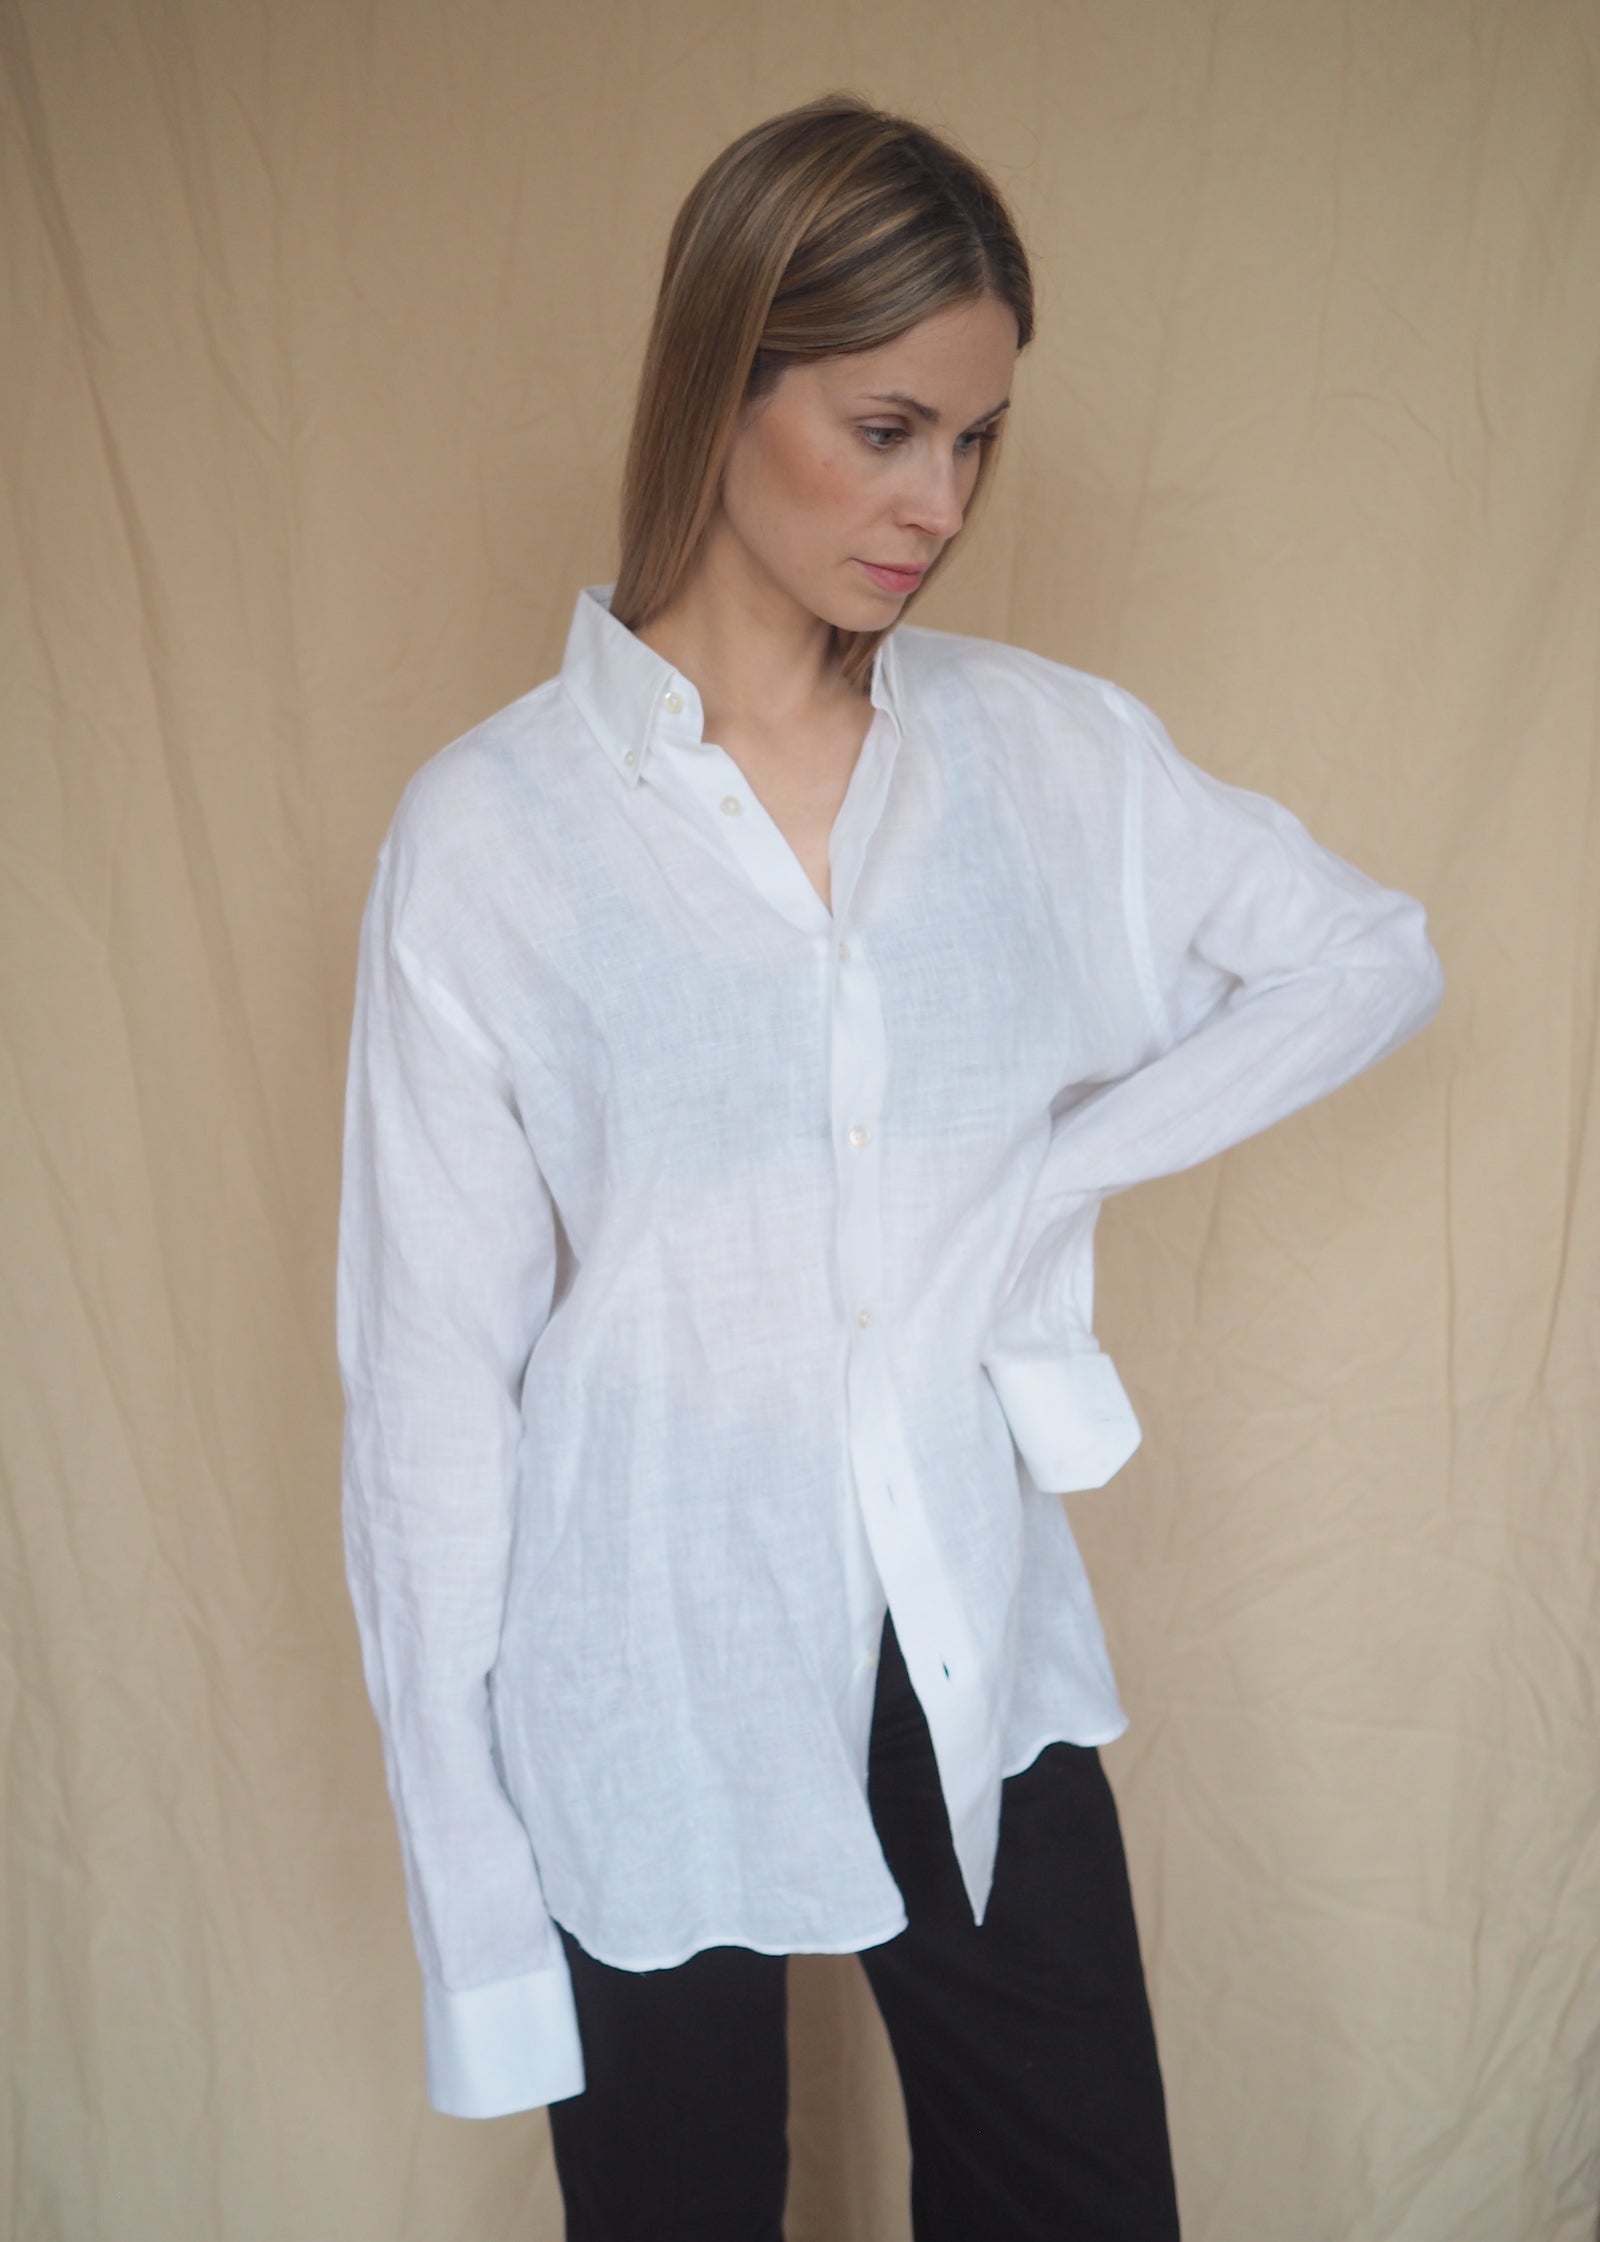 Handmade Linen Shirt